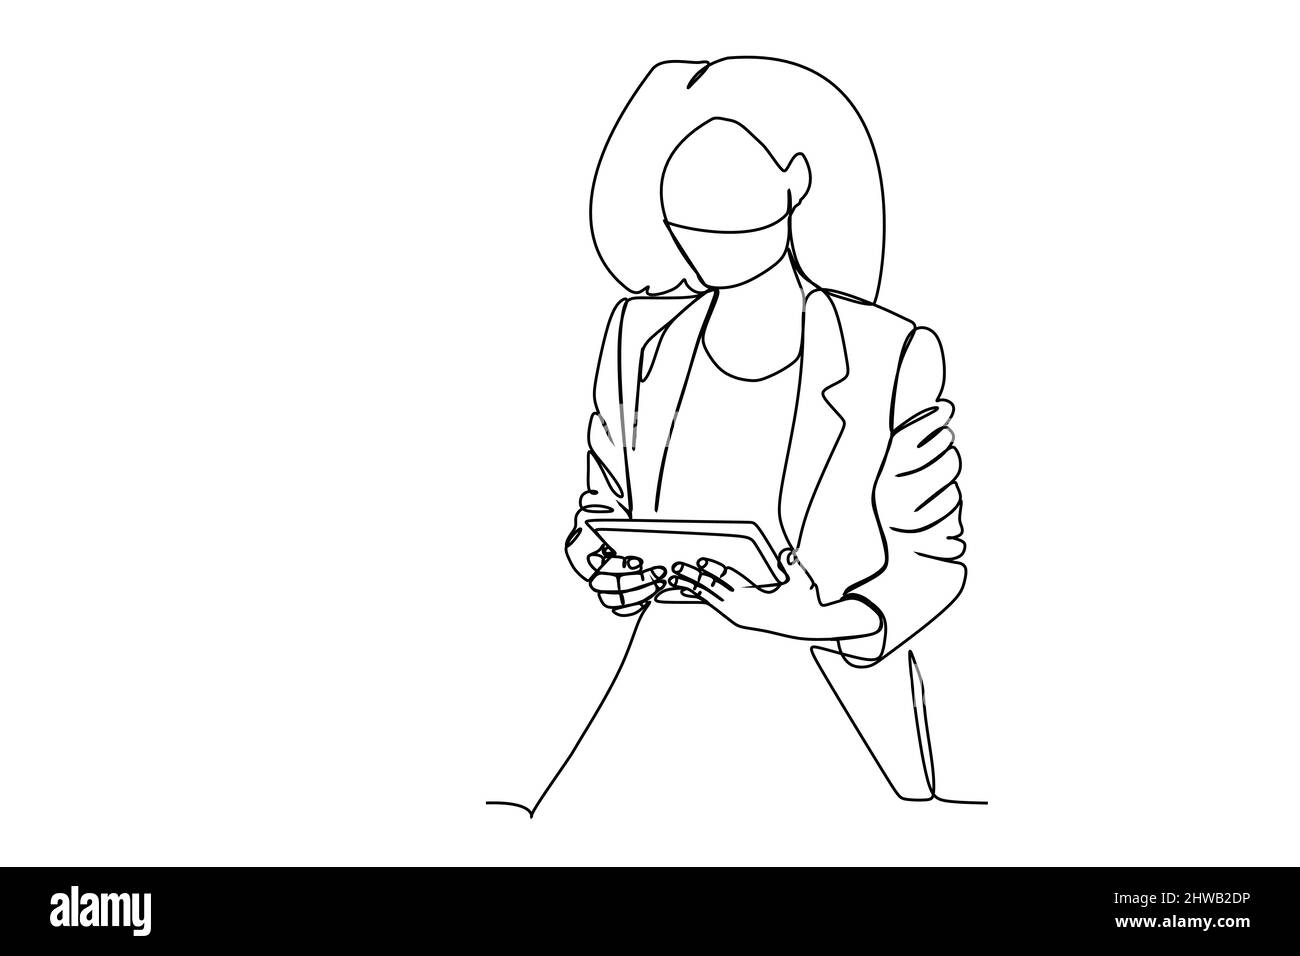 Eine fortlaufende, einzeilige Zeichnung einer Geschäftsfrau, die den Tablet-Computer betrachtet. Handgezeichnete Linienzeichnung für Technologie und Geschäftsmodell und Kontra Stock Vektor